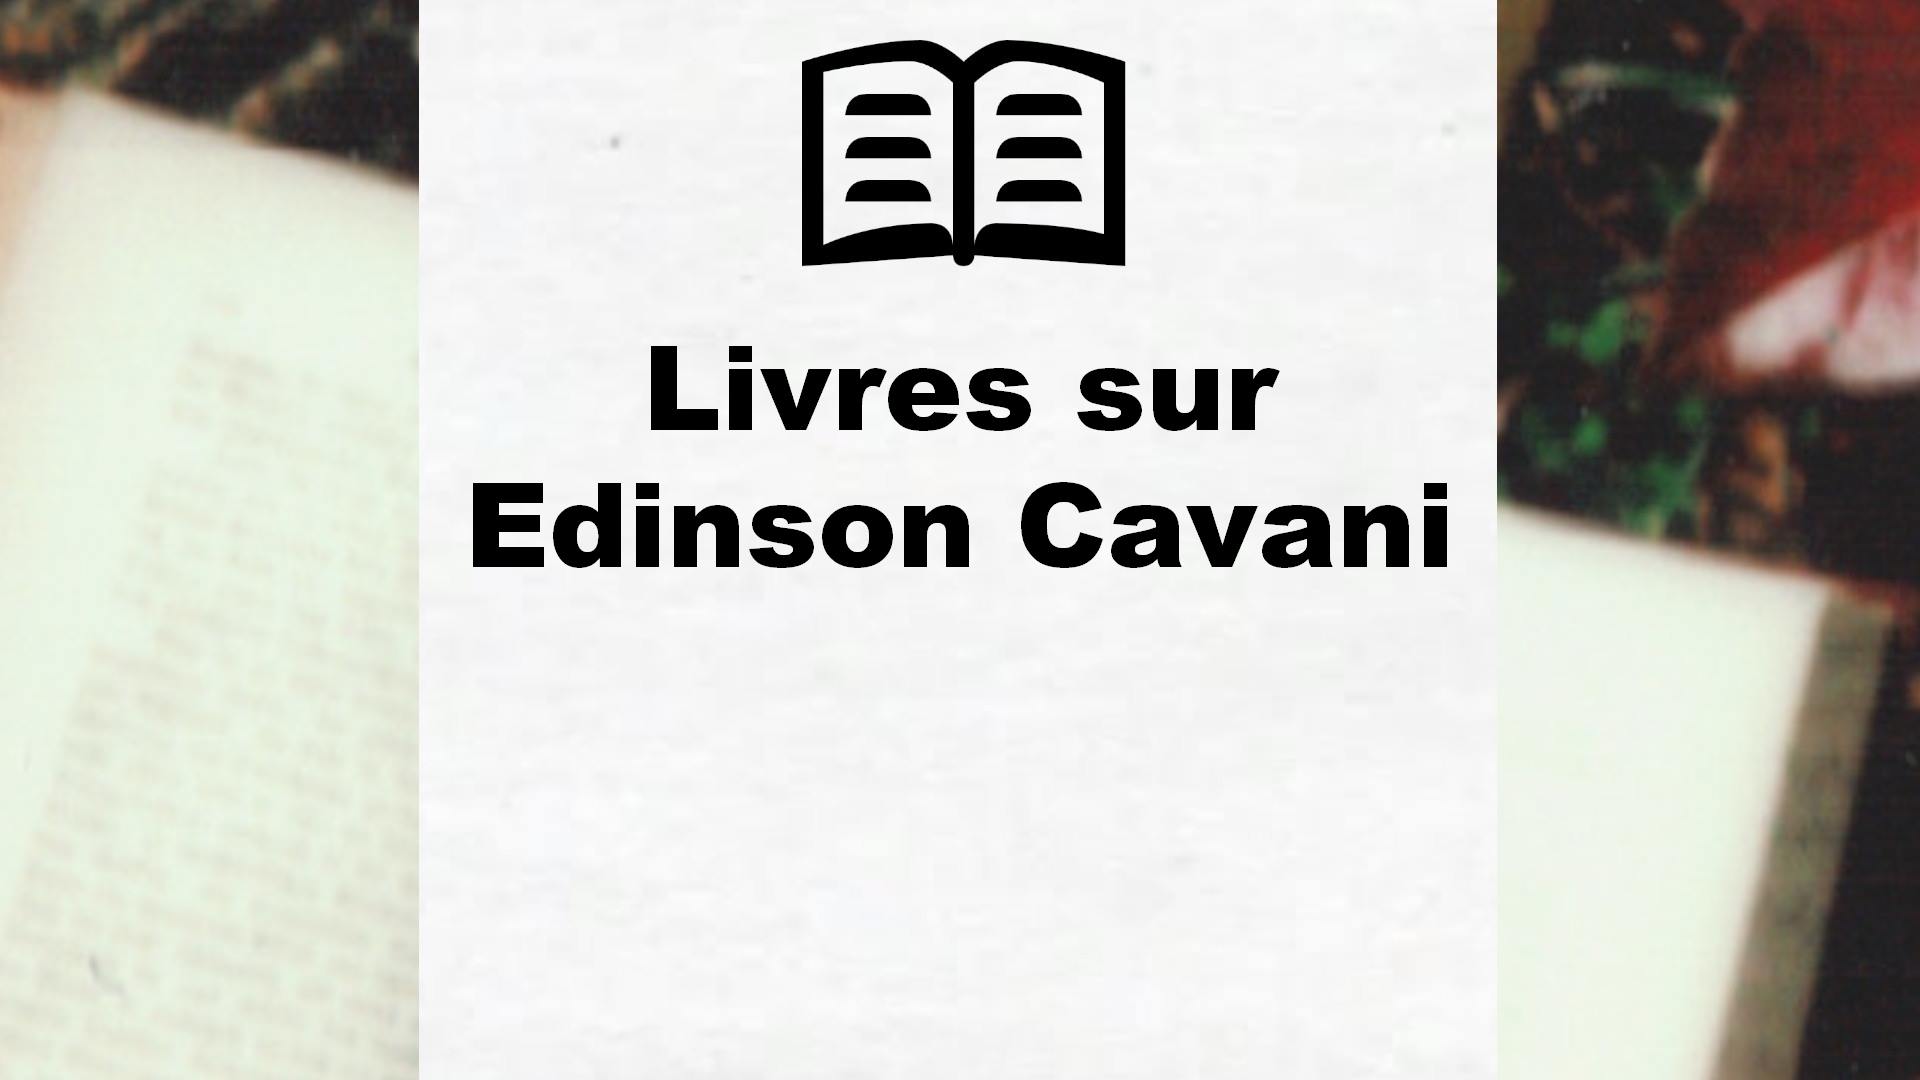 Livres sur Edinson Cavani